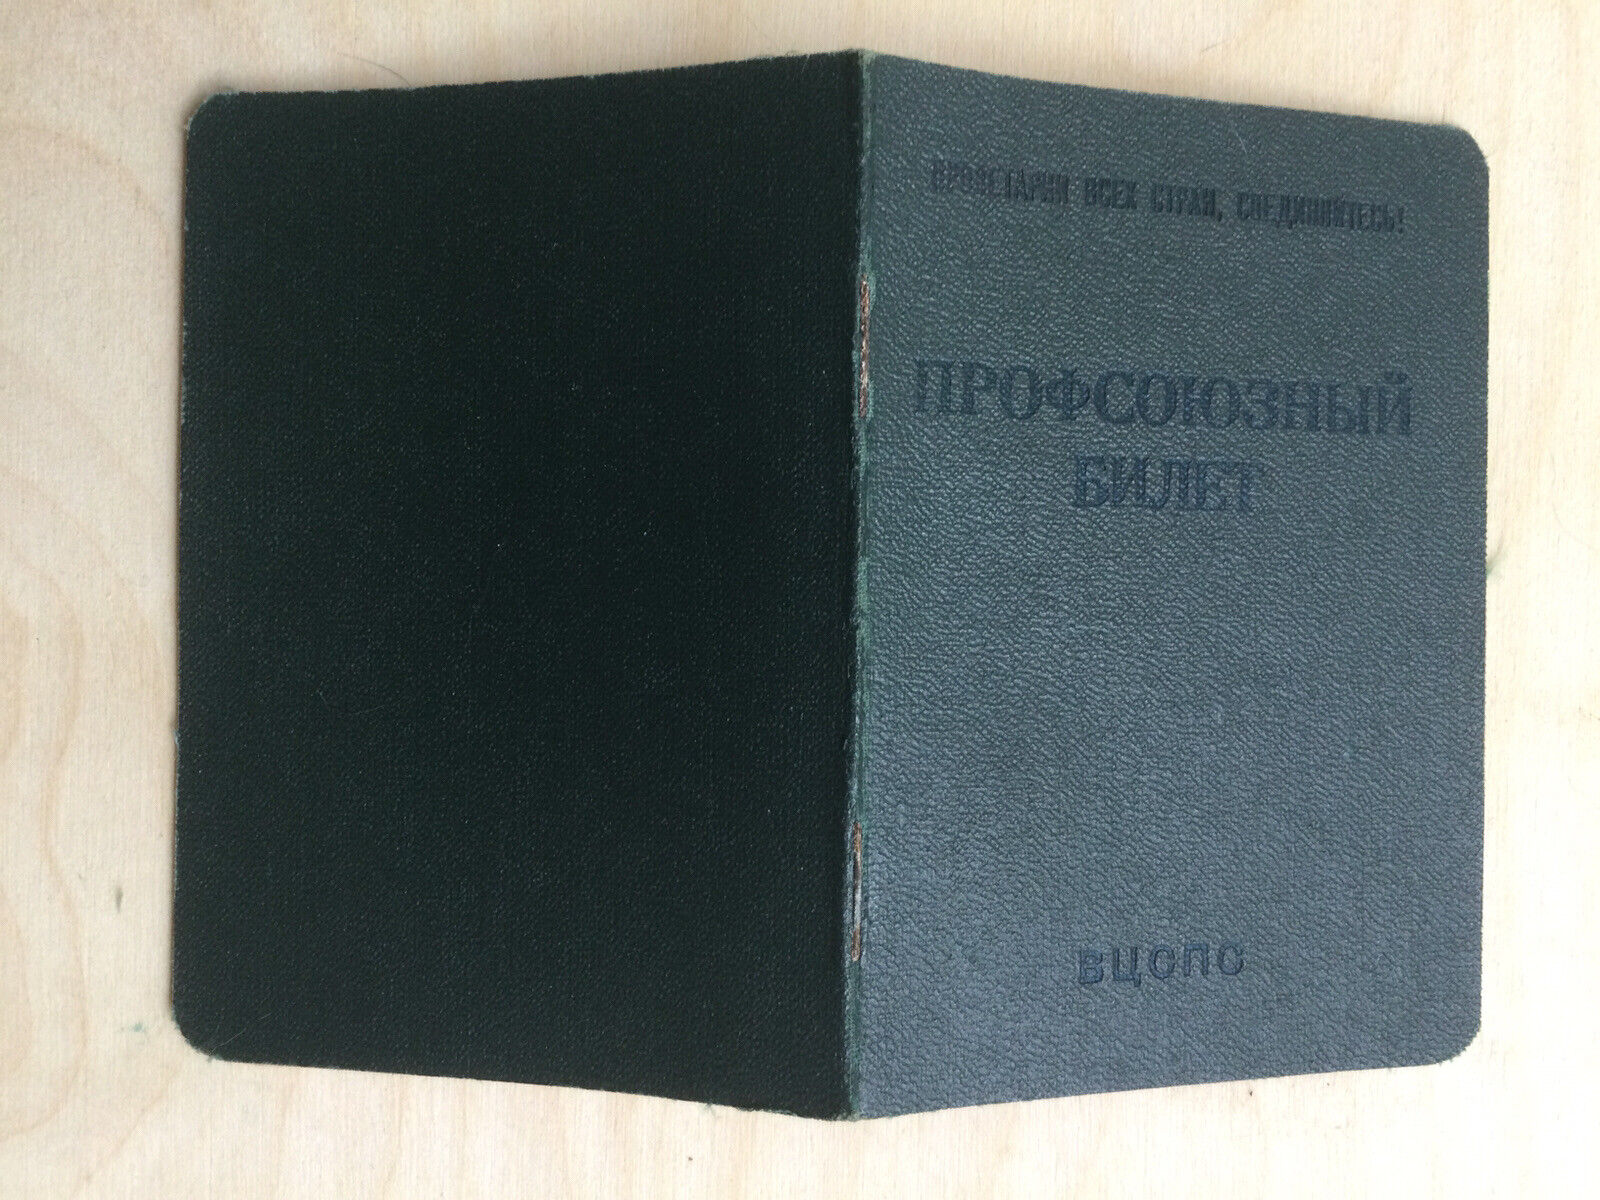 Vintage Soviet Union Membership Card